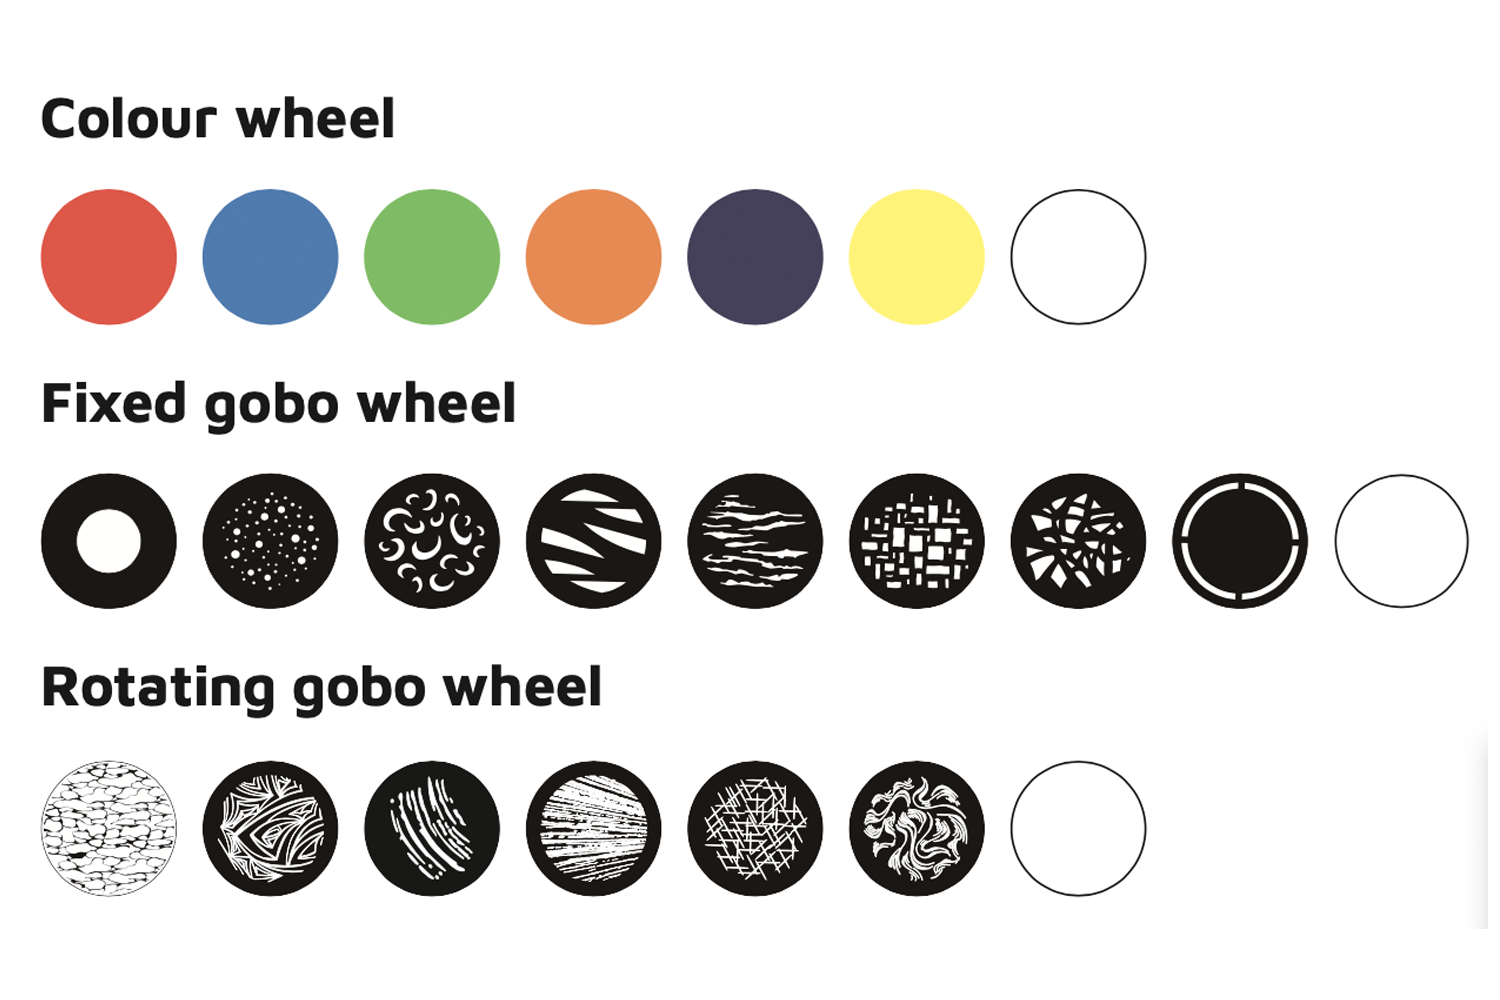 Event Lighting ENFORCER580 Colour Wheel Fixed Gobo Wheel Rotating Gobo Wheel